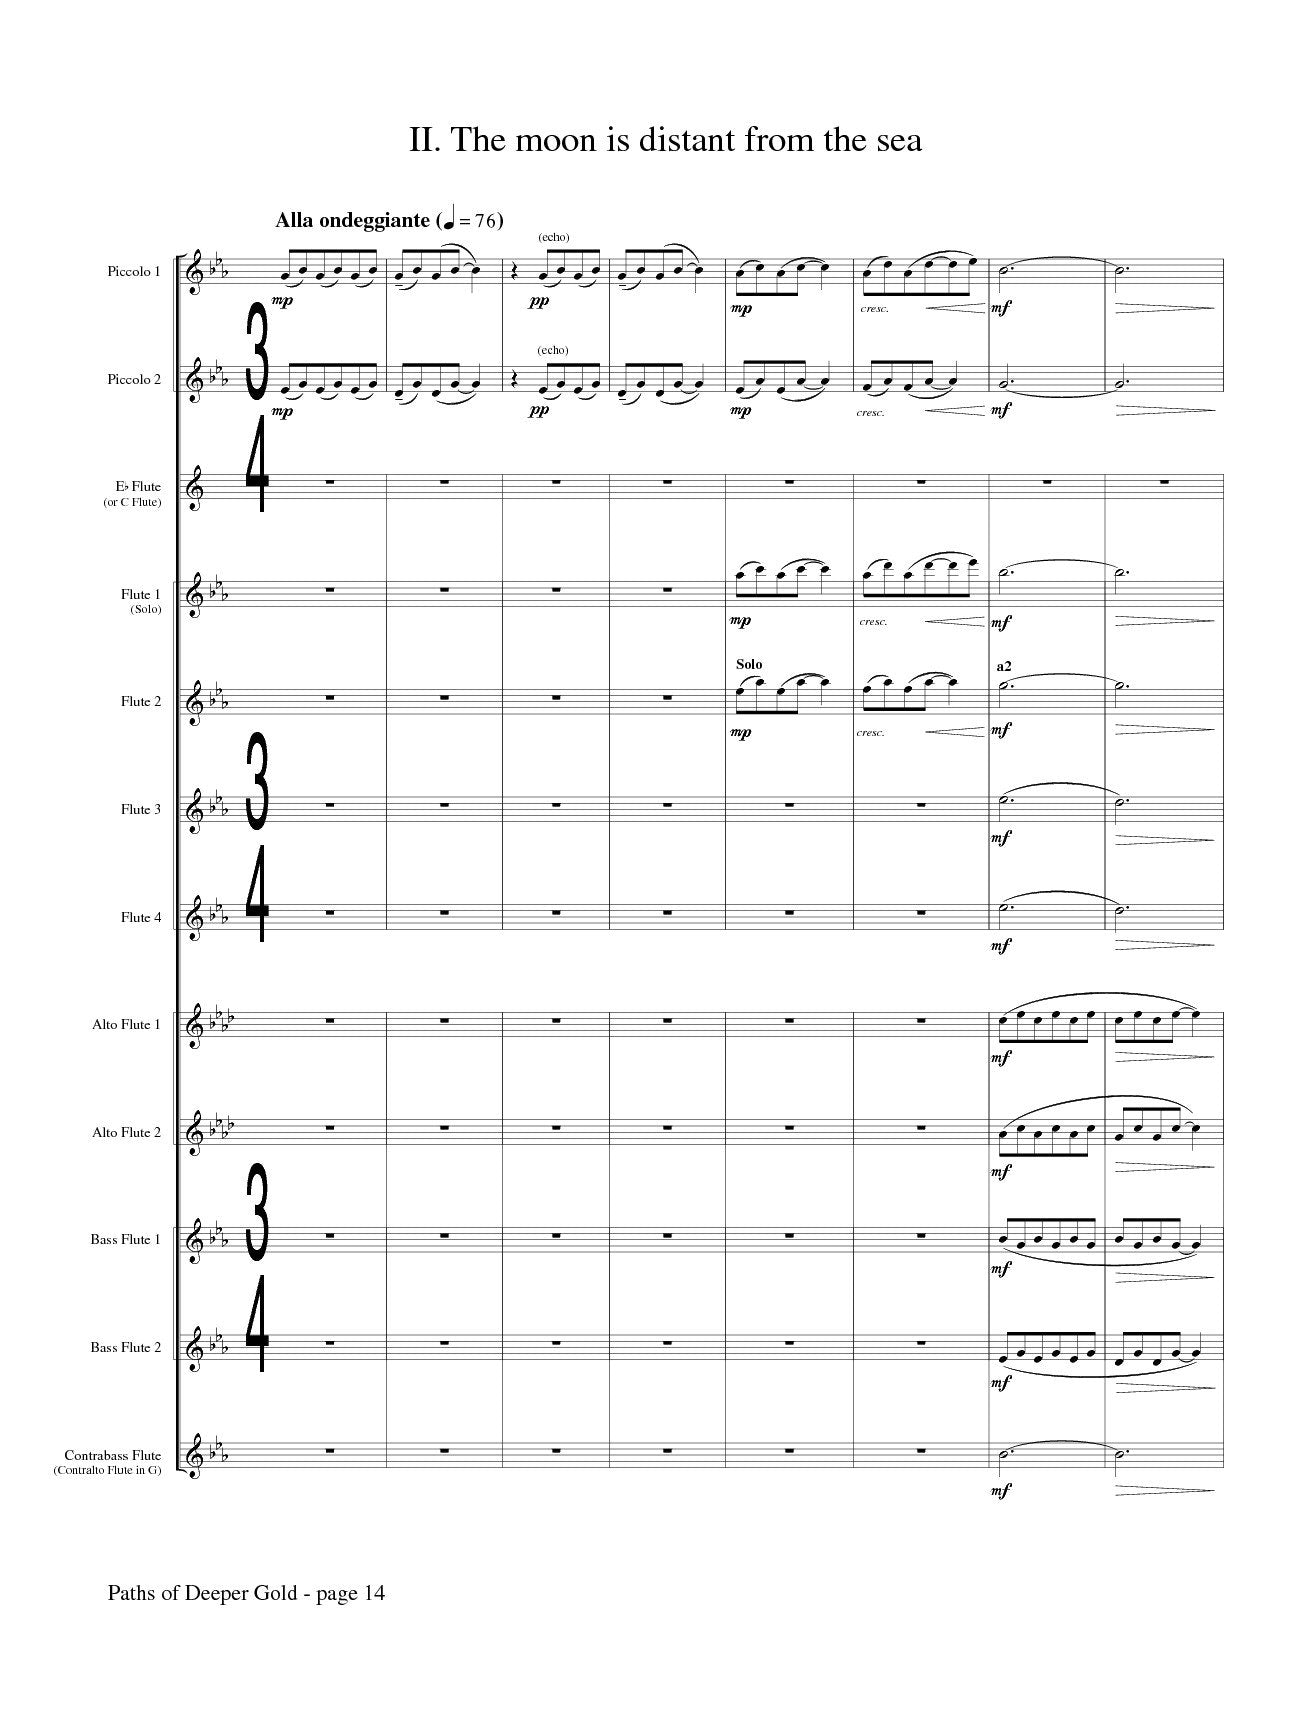 Molnar-Suhajda, Alexandra -Paths of Deeper Gold for Flute Choir